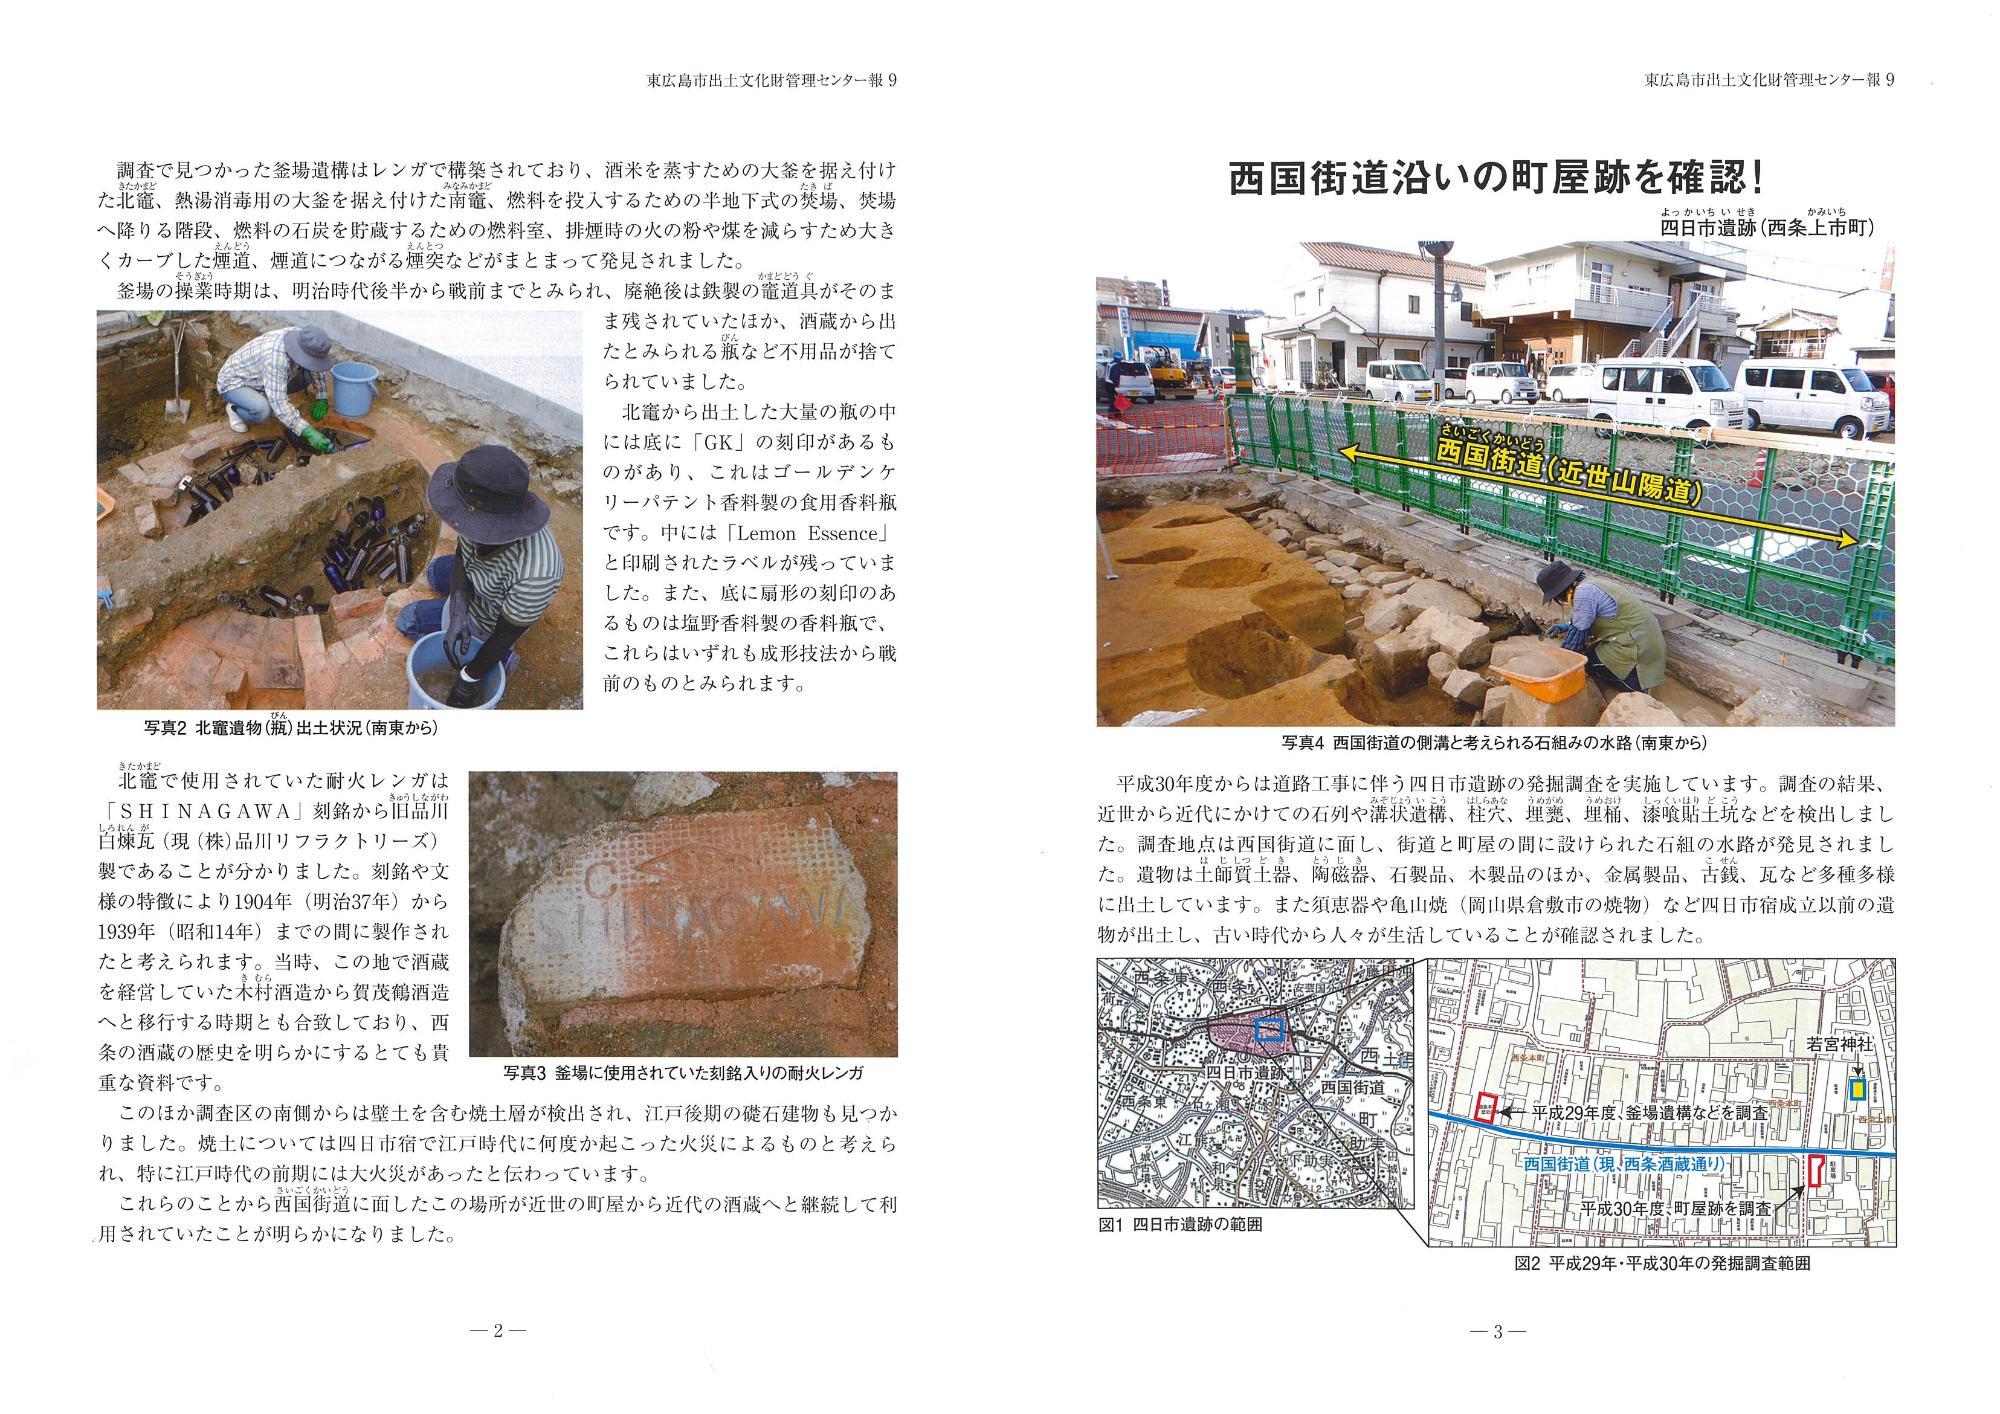 東広島市出土文化財管理センター報『東ひろしまの遺跡』9の写真2